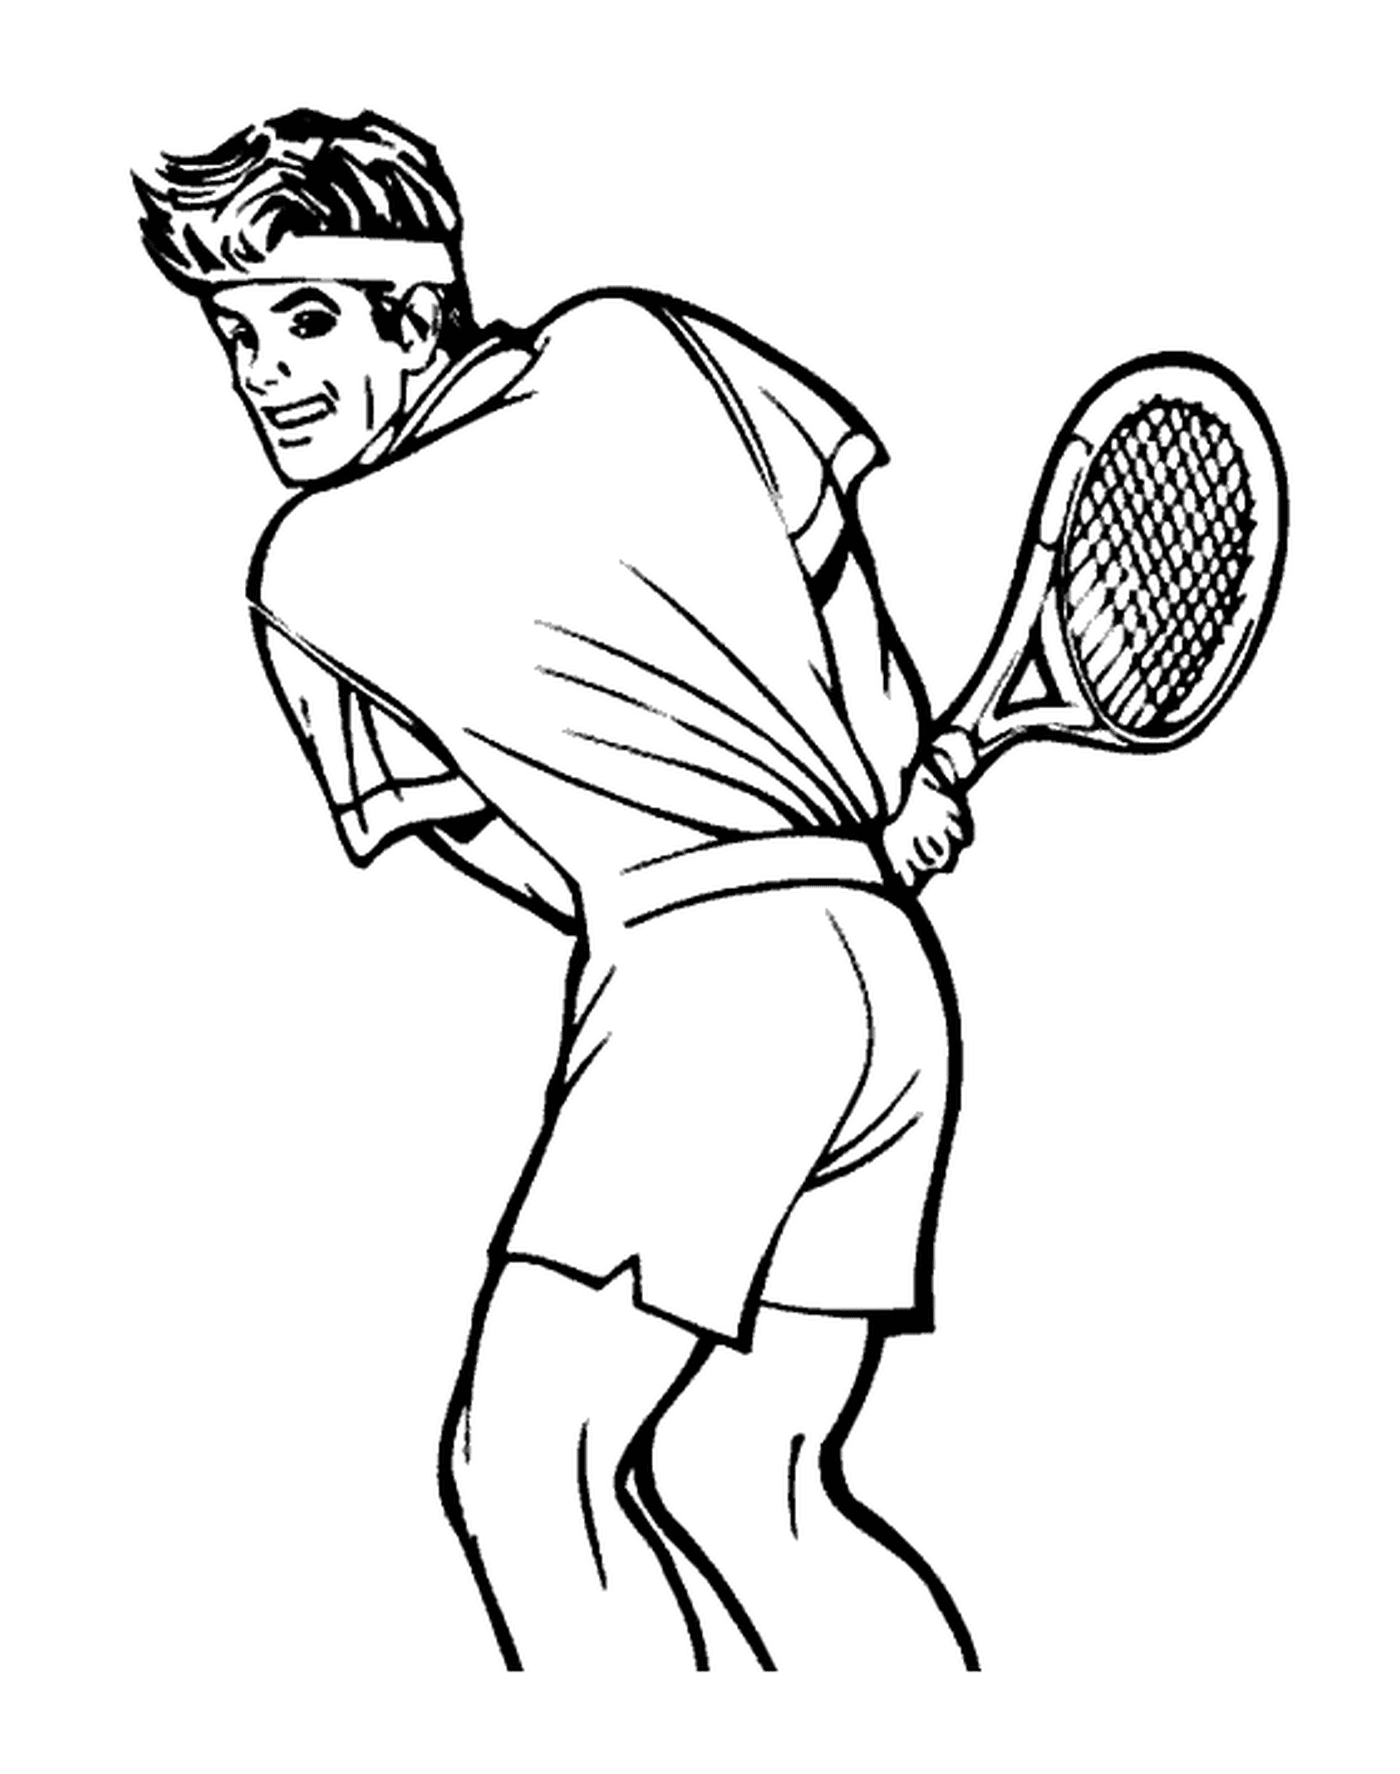  Un tenista en la cancha 